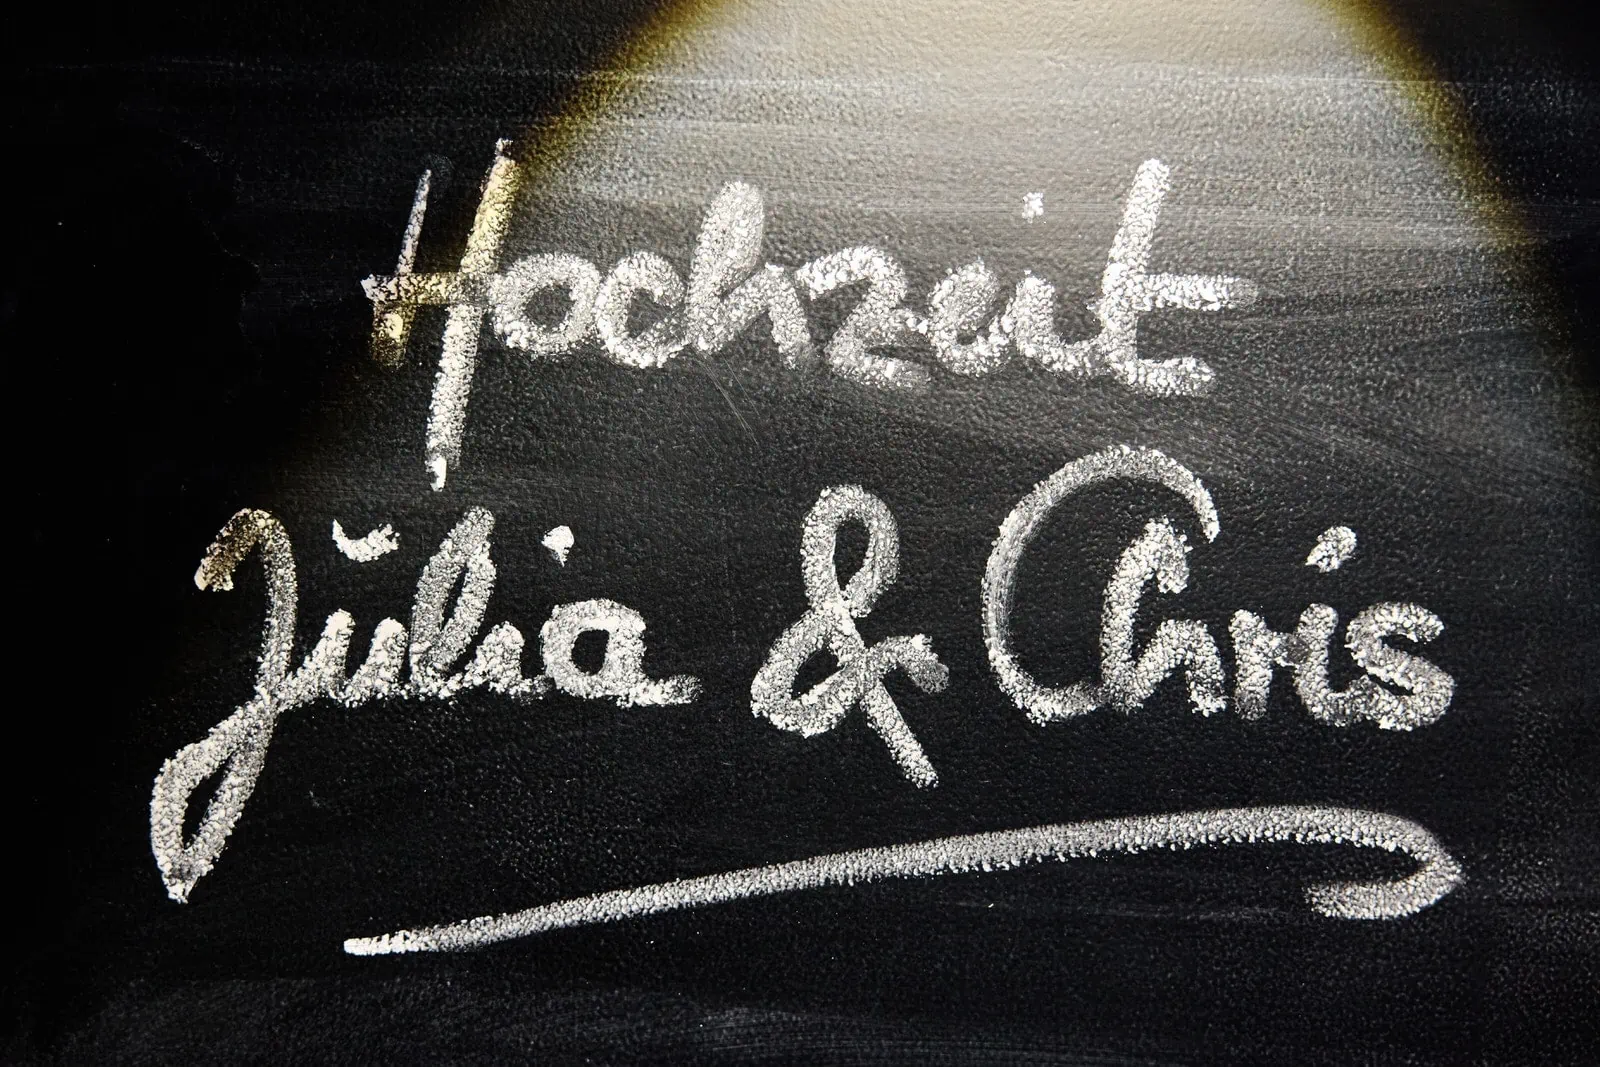 Eine Tafel auf der Hochzeit Julia und Chris mit Kreide geschrieben ist. Sie wird von einem Lichtkegel angestrahlt.